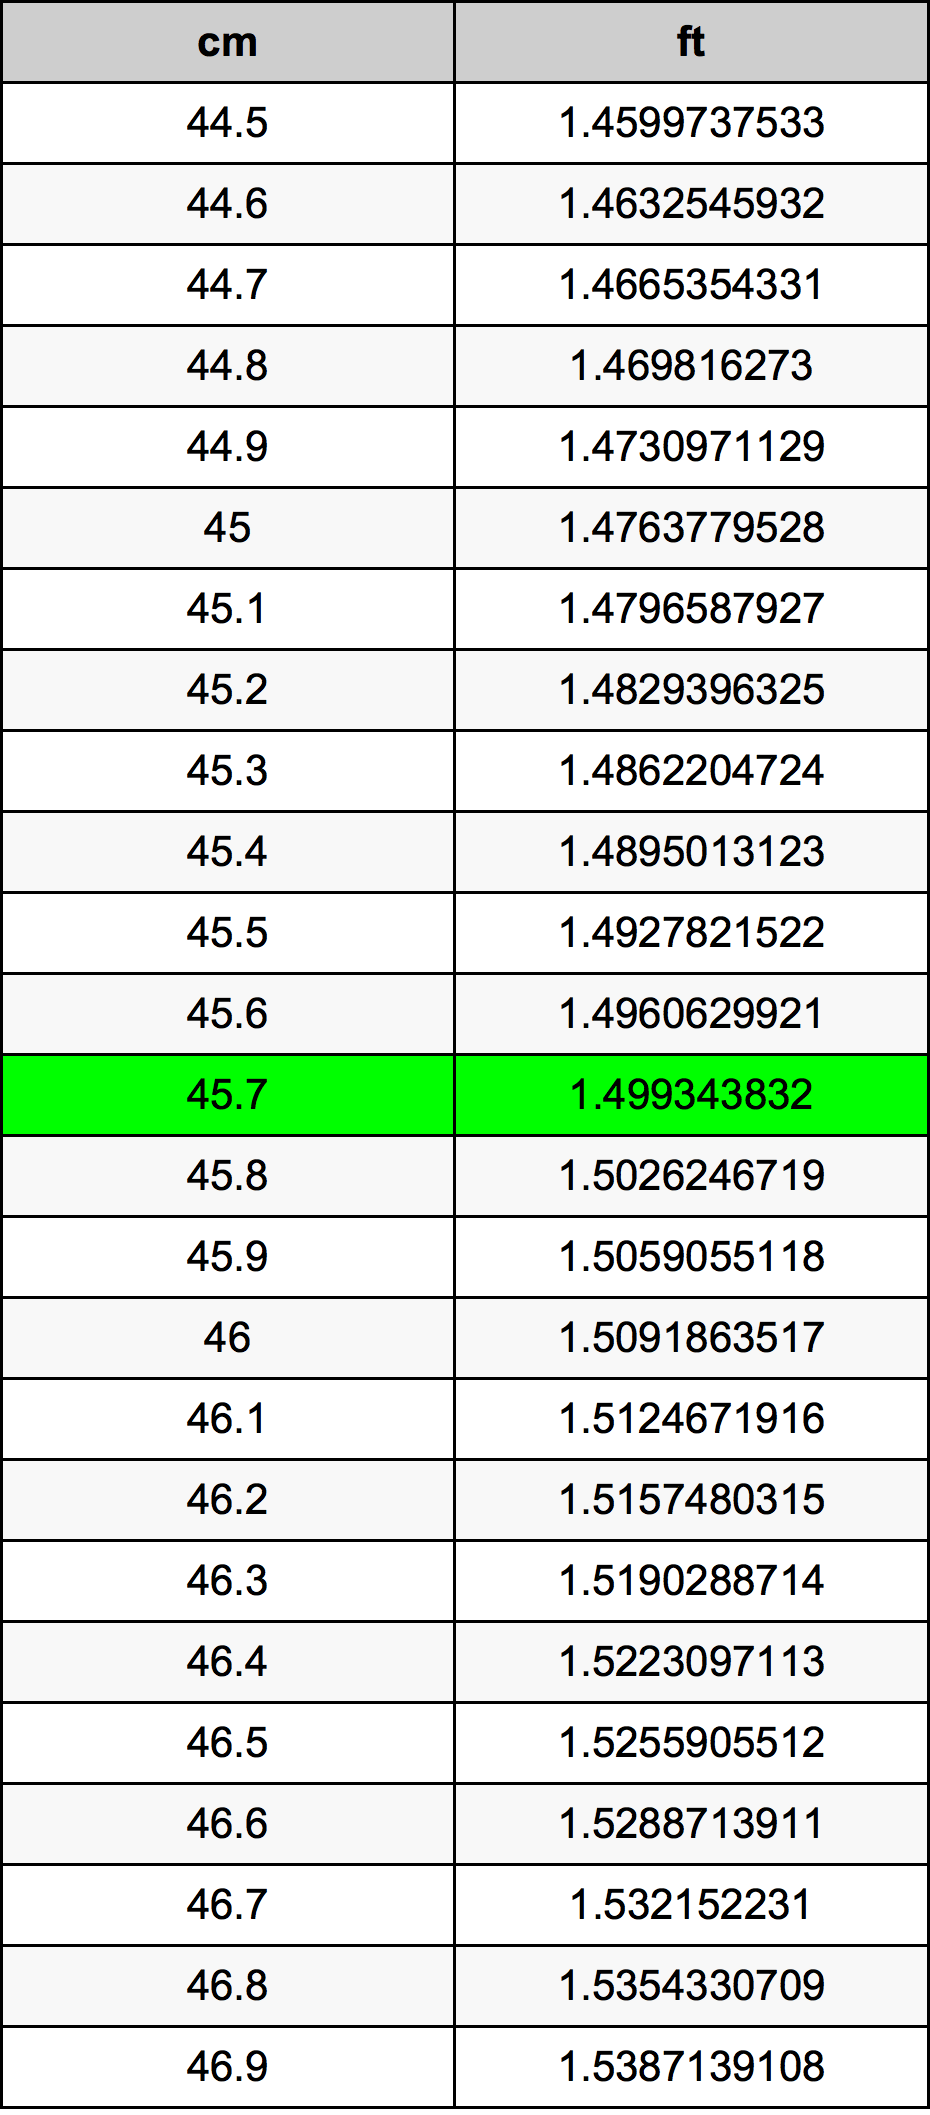 45.7 Centiméter átszámítási táblázat